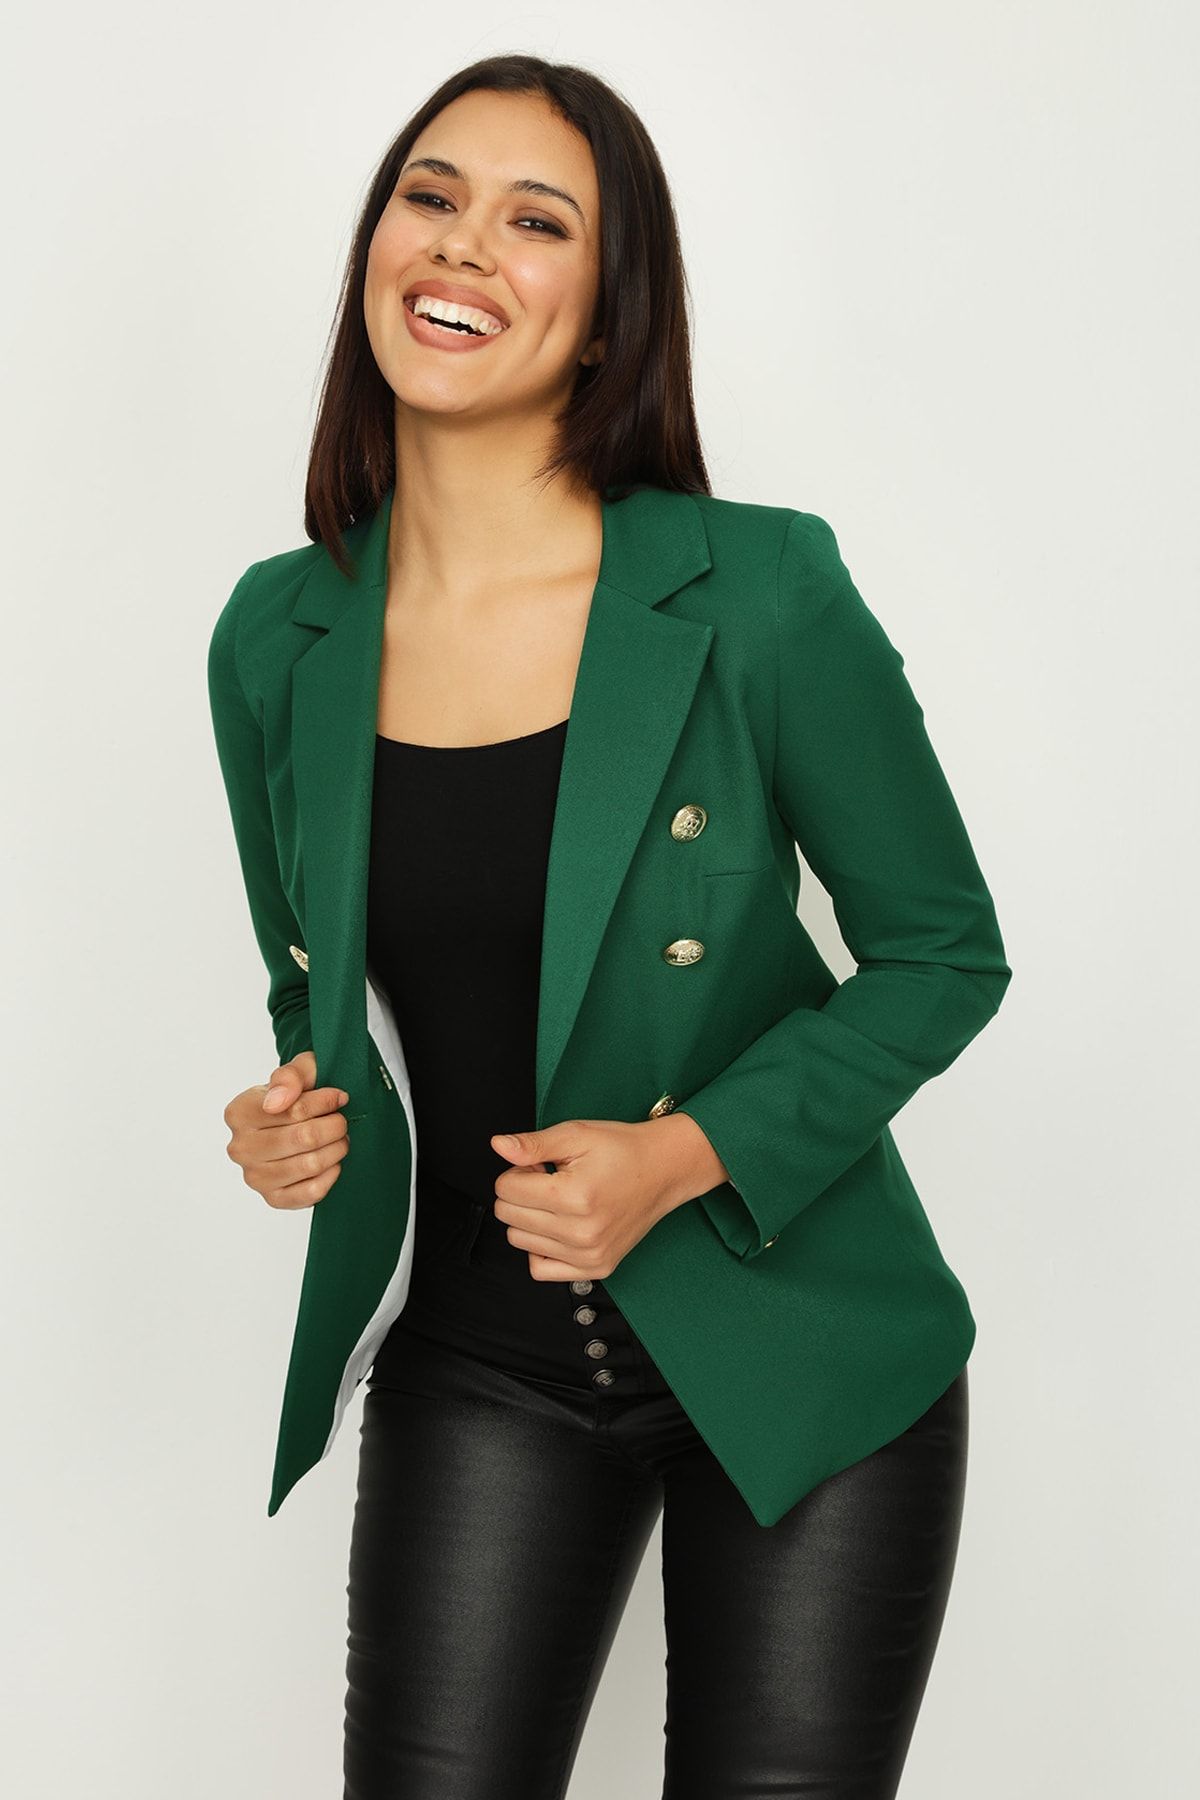 Select Moda Kadın Koyu Yeşil Gold Düğme Kapamalı Astarlı Blazer Ceket